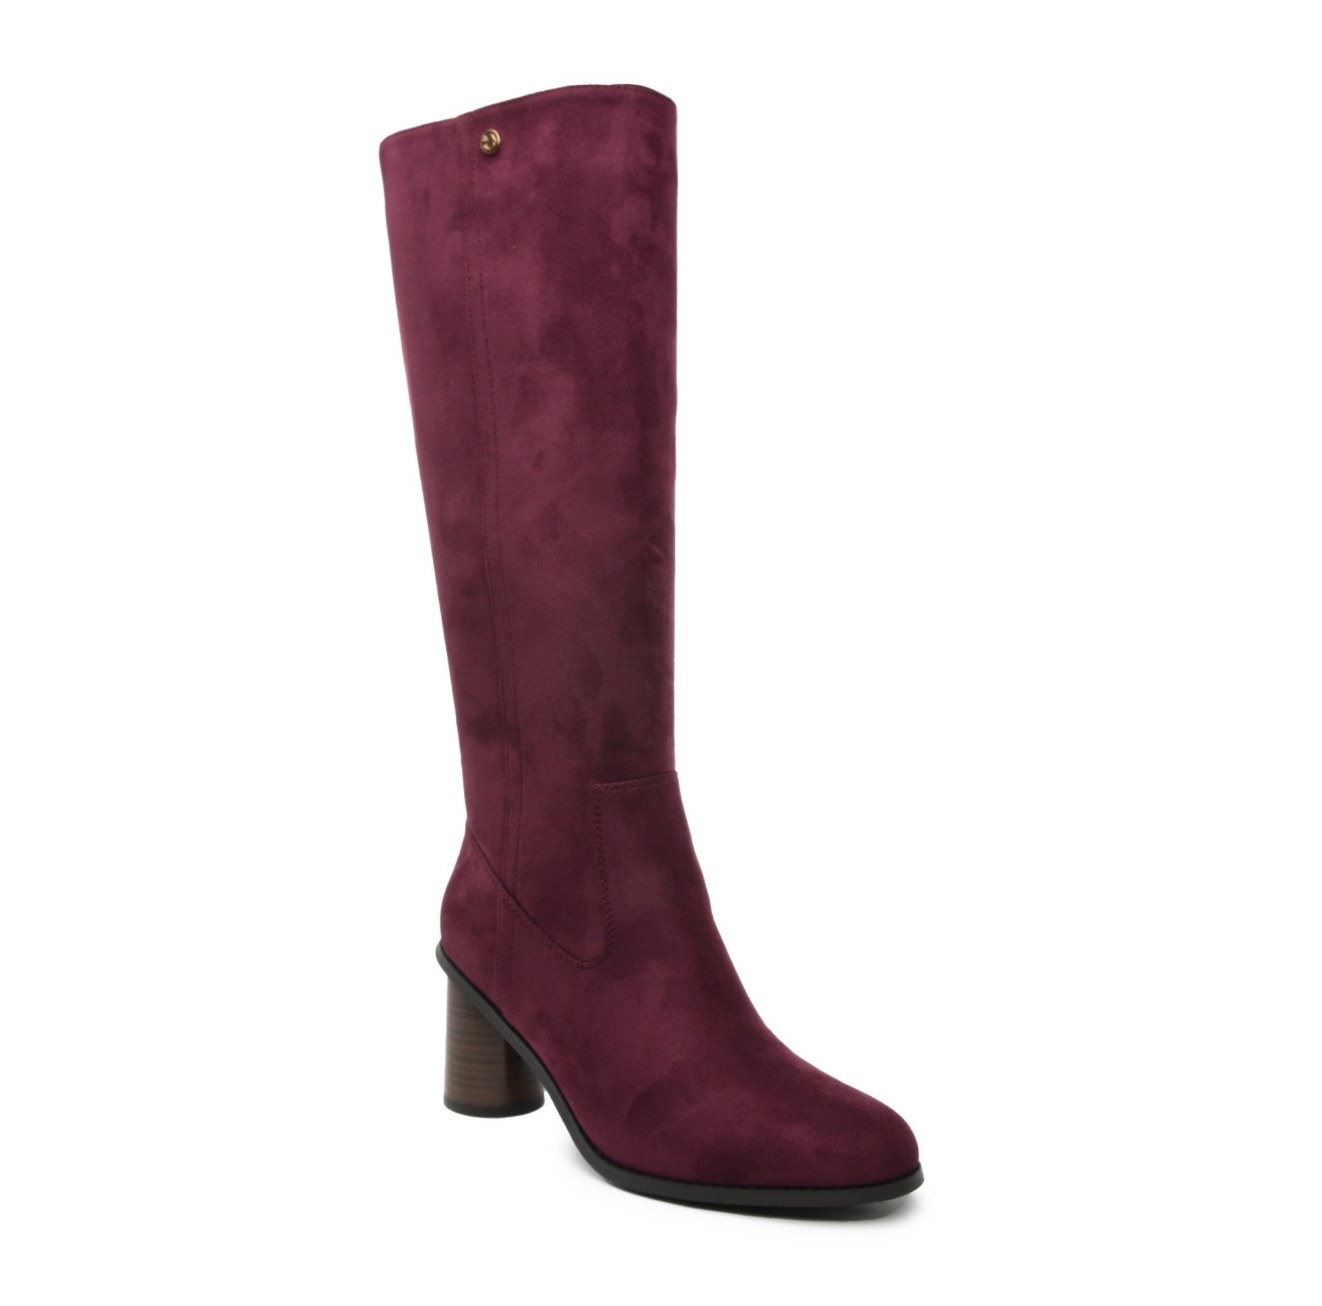 A high heel knee-high burgundy boot